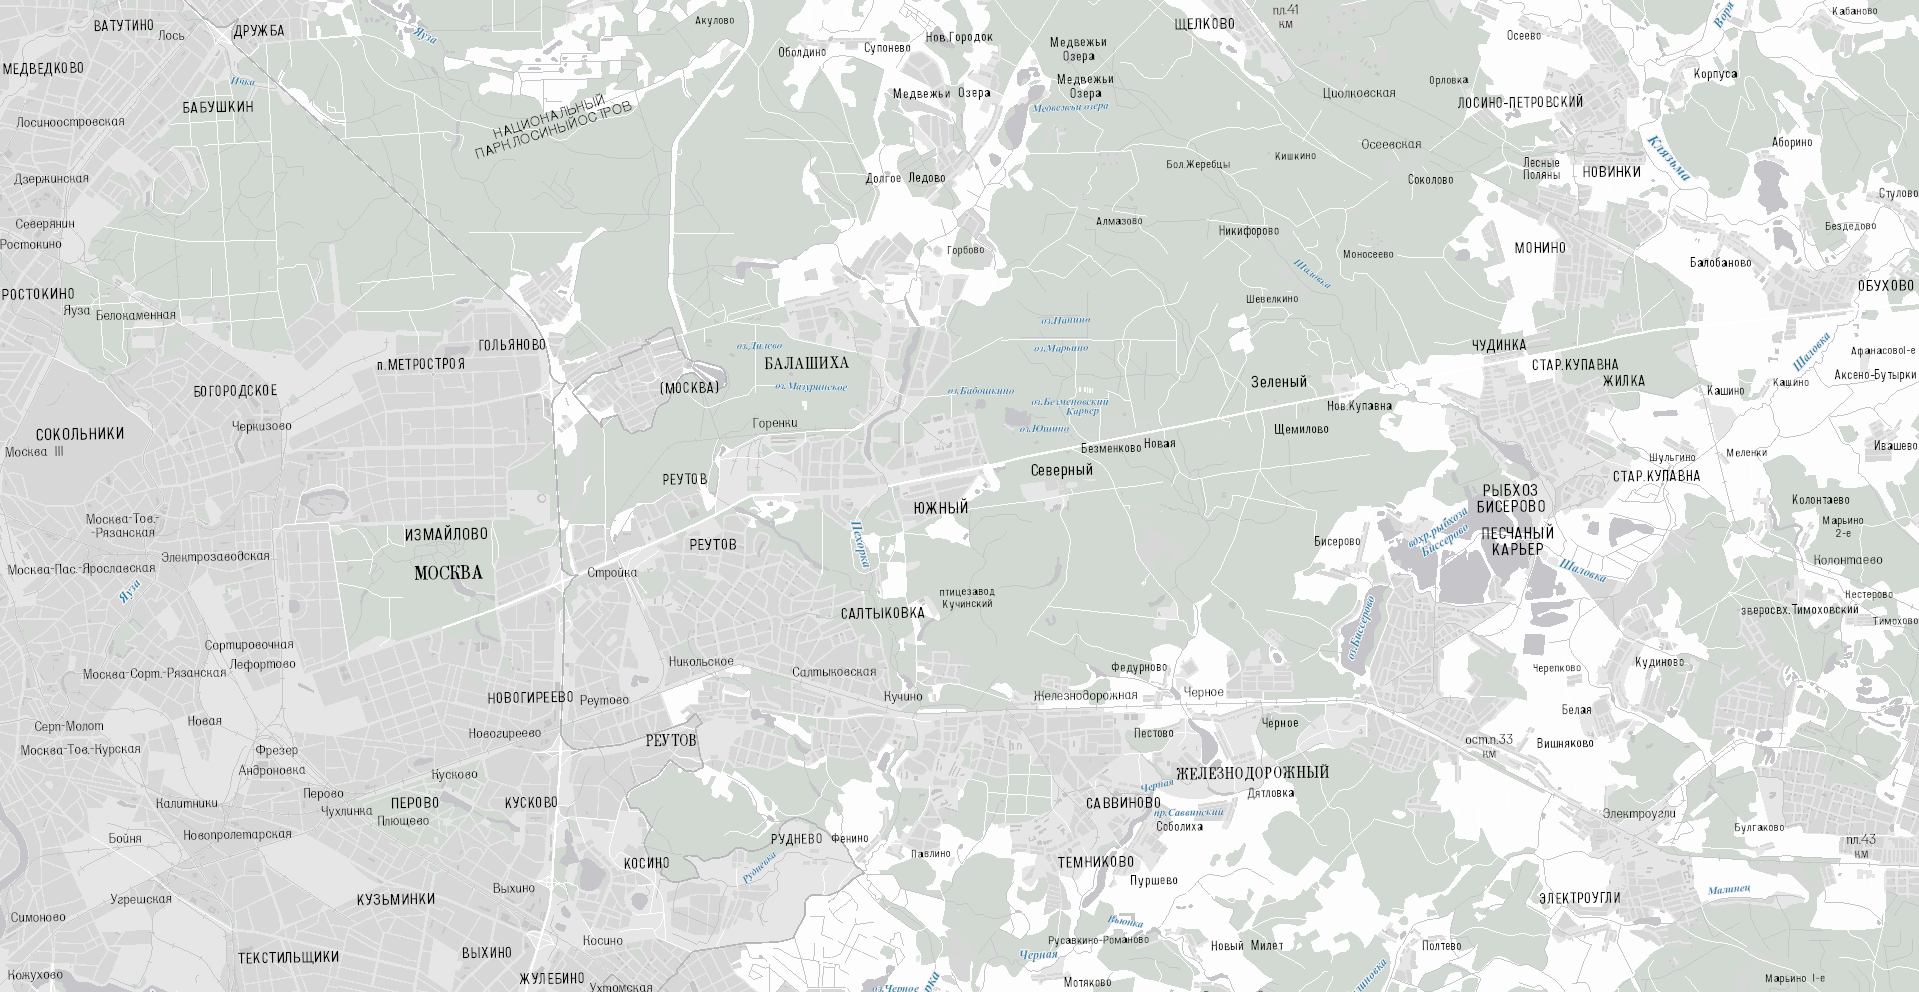 Варіант оформлення топографічної карти РФ масштабу 1: 100 000 для ArcGIS (ДАТА +)